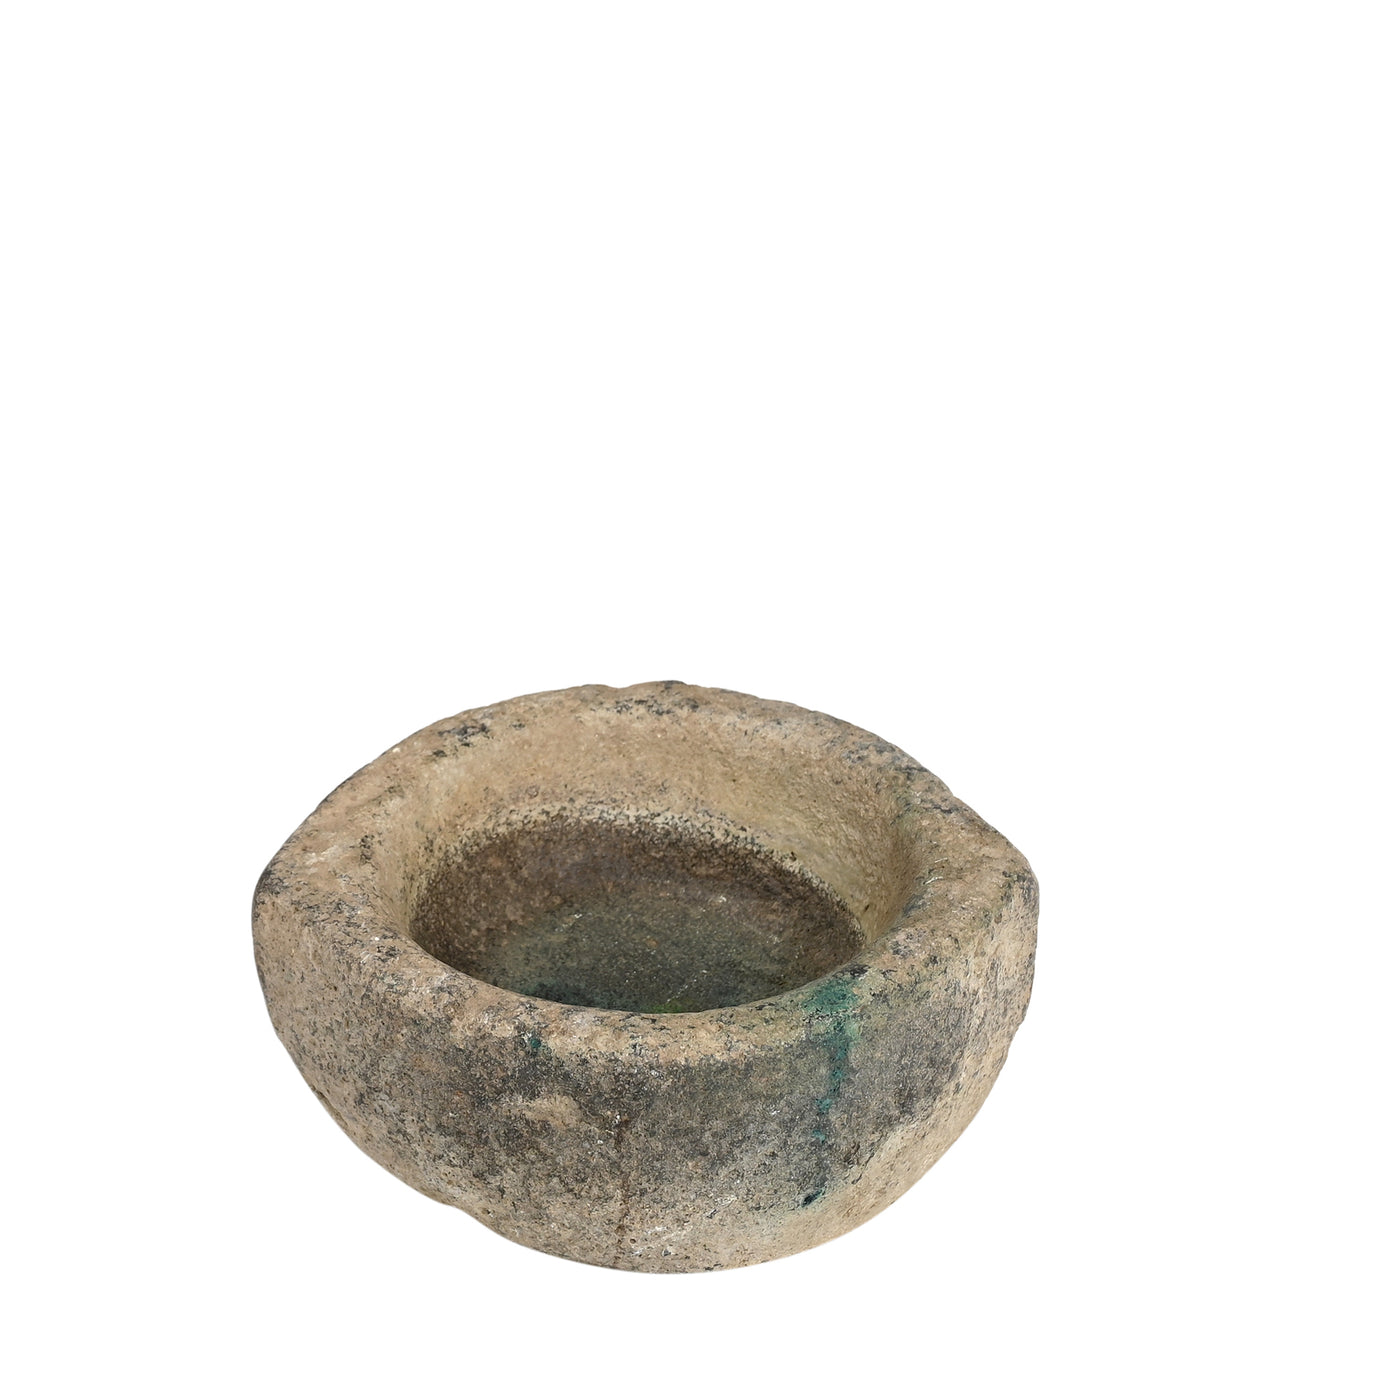 Devliya - Stone bowl n ° 6